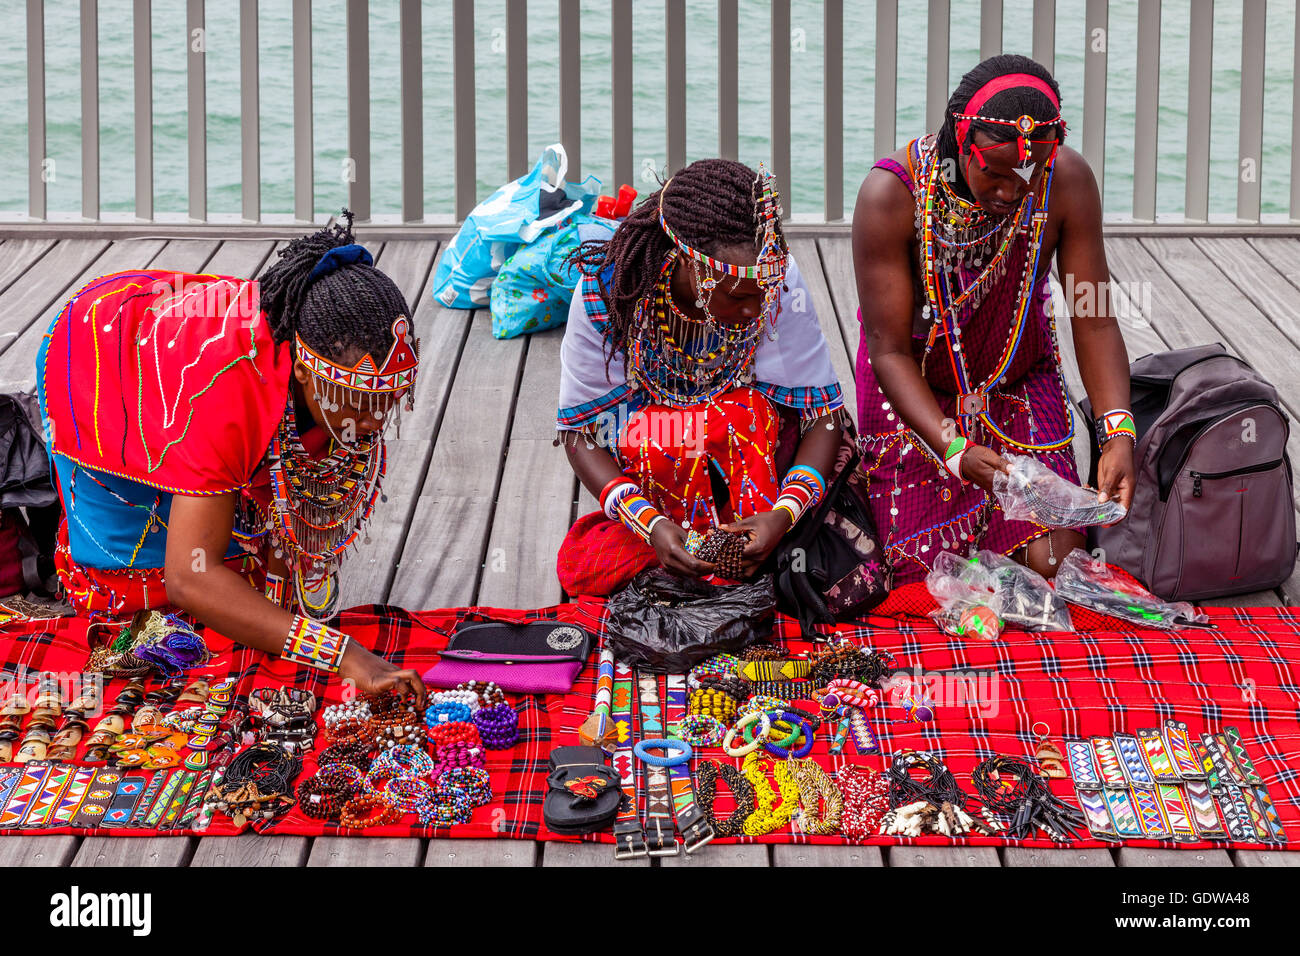 Les peuples africains en costume traditionnel vendant de l'artisanat sur Hastings Pier Au cours de la Pirate Day Festival, Hastings, Royaume-Uni Banque D'Images